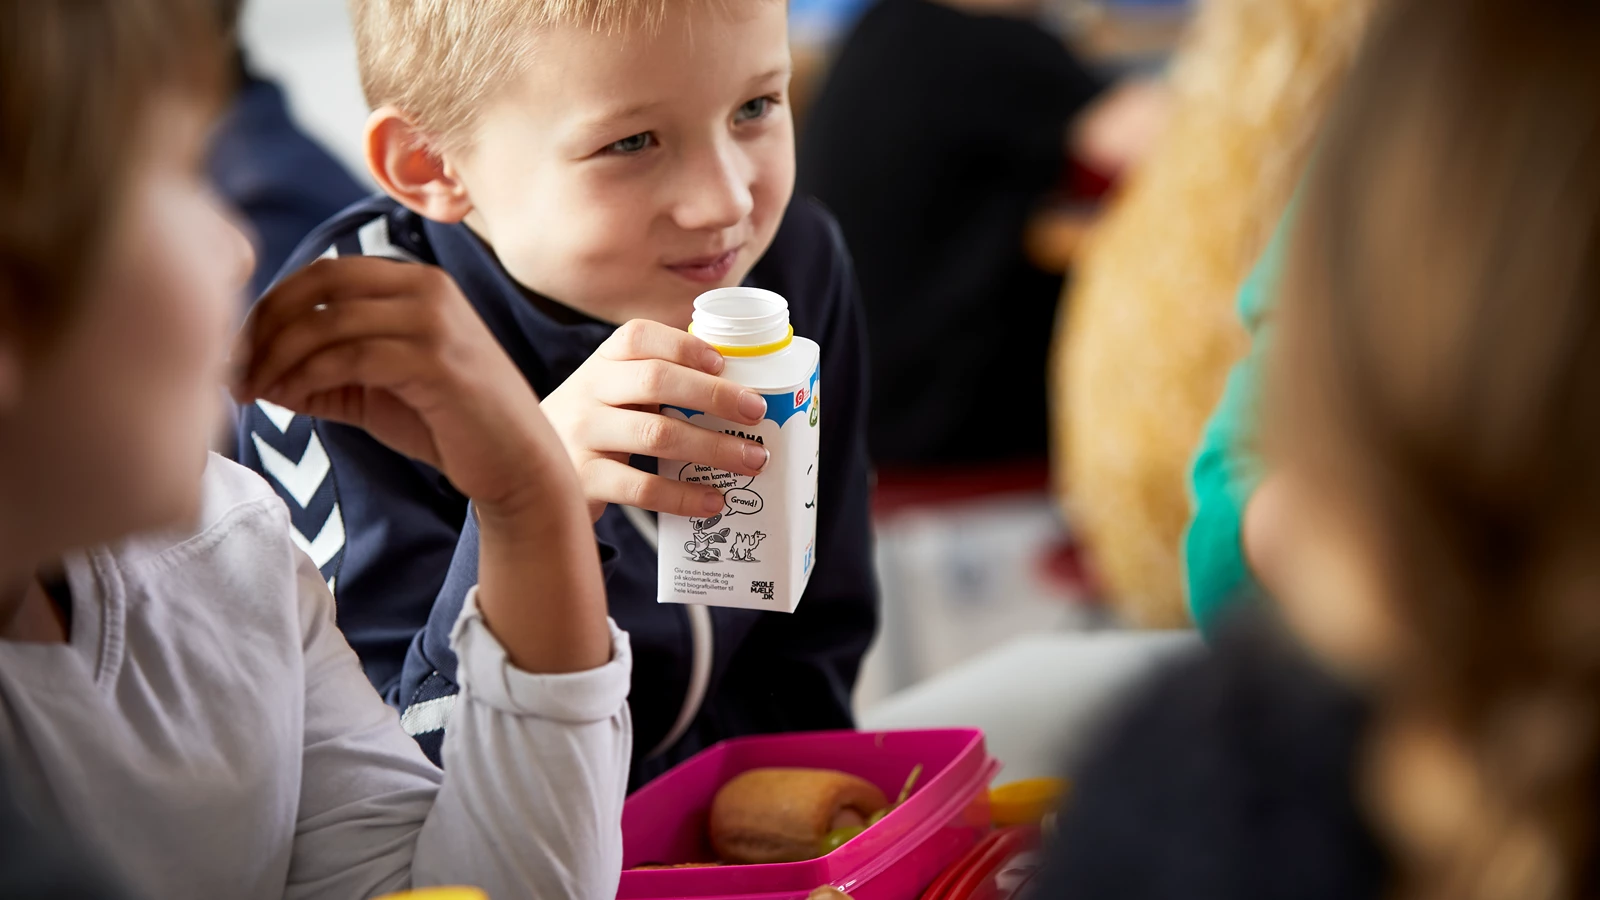 Copenhagen wants to drop school milk